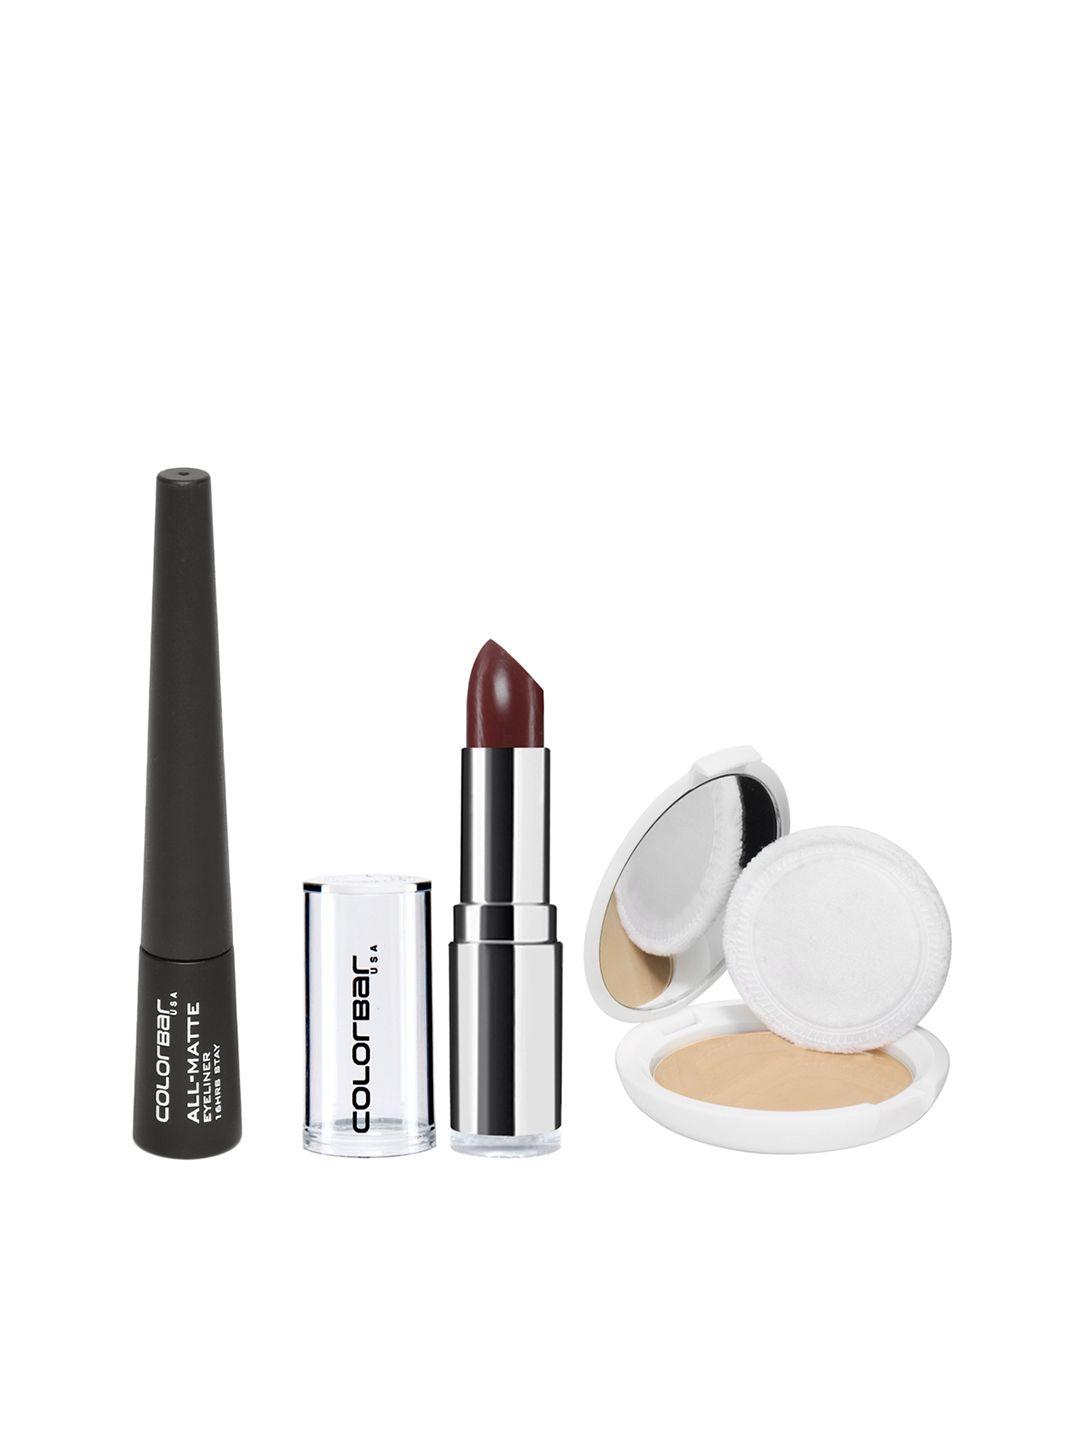 colorbar women makeup gift set